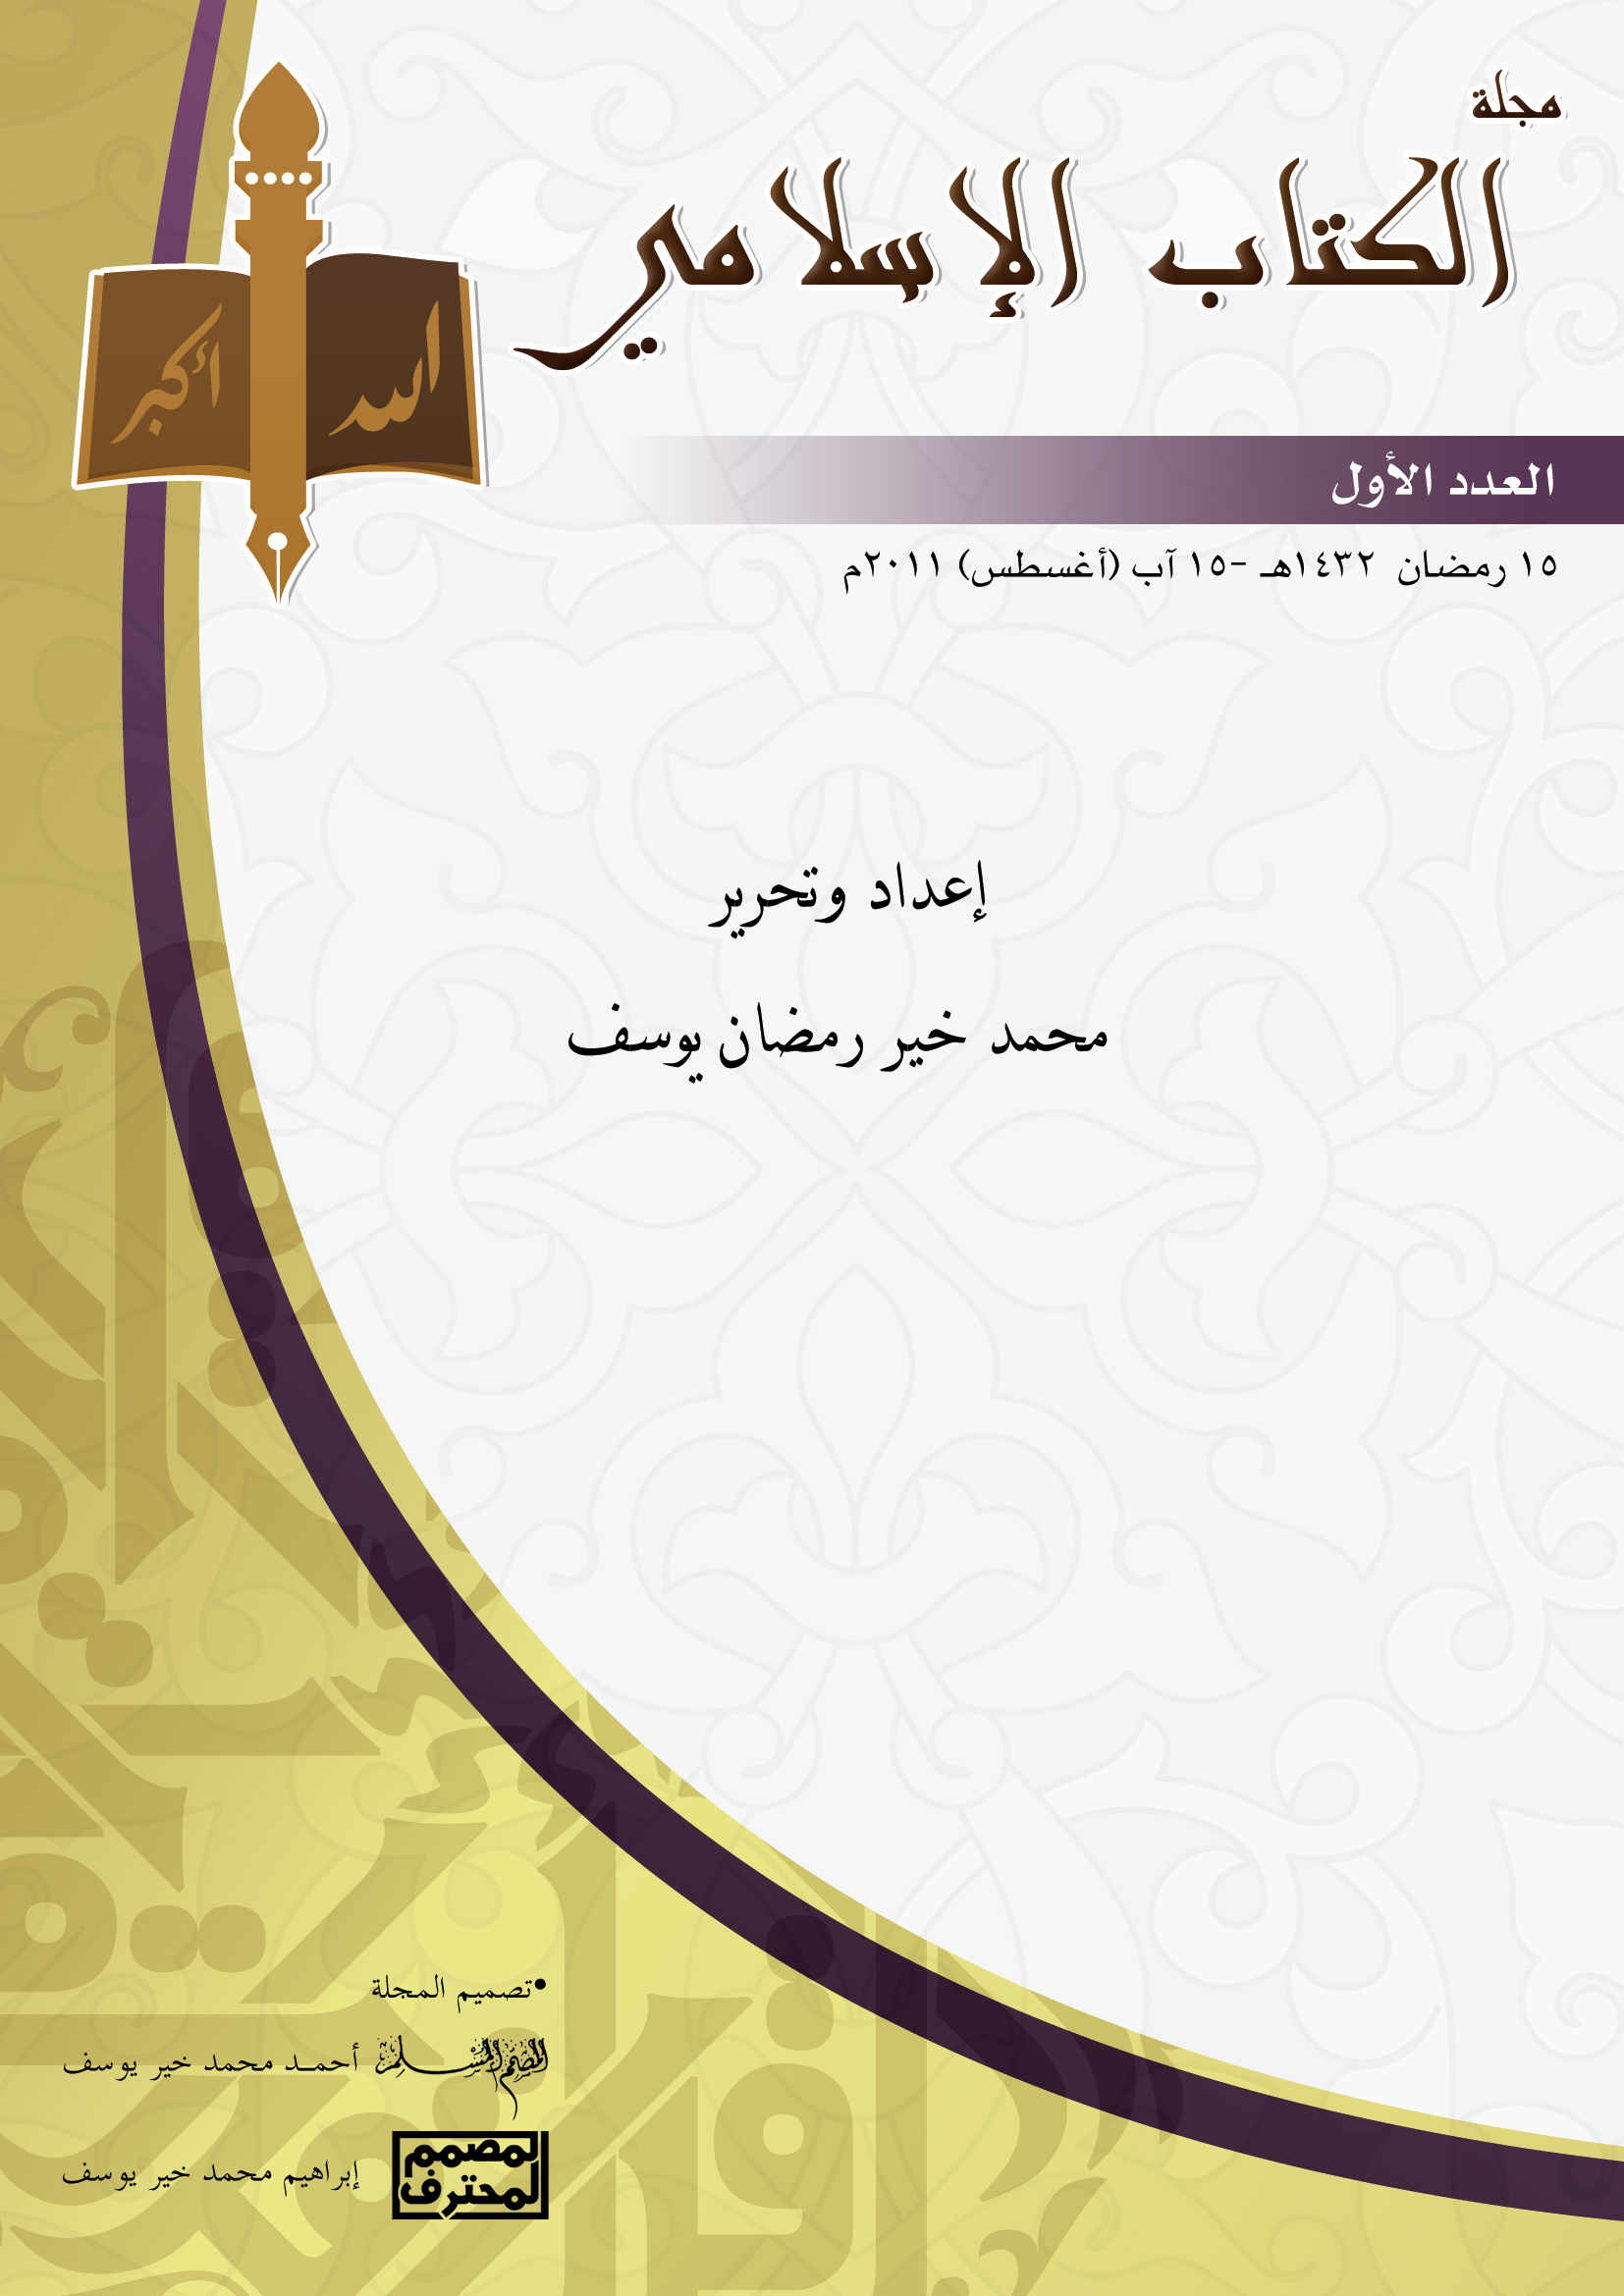 غلاف العدد الأول من مجلة الكتاب الإسلامي